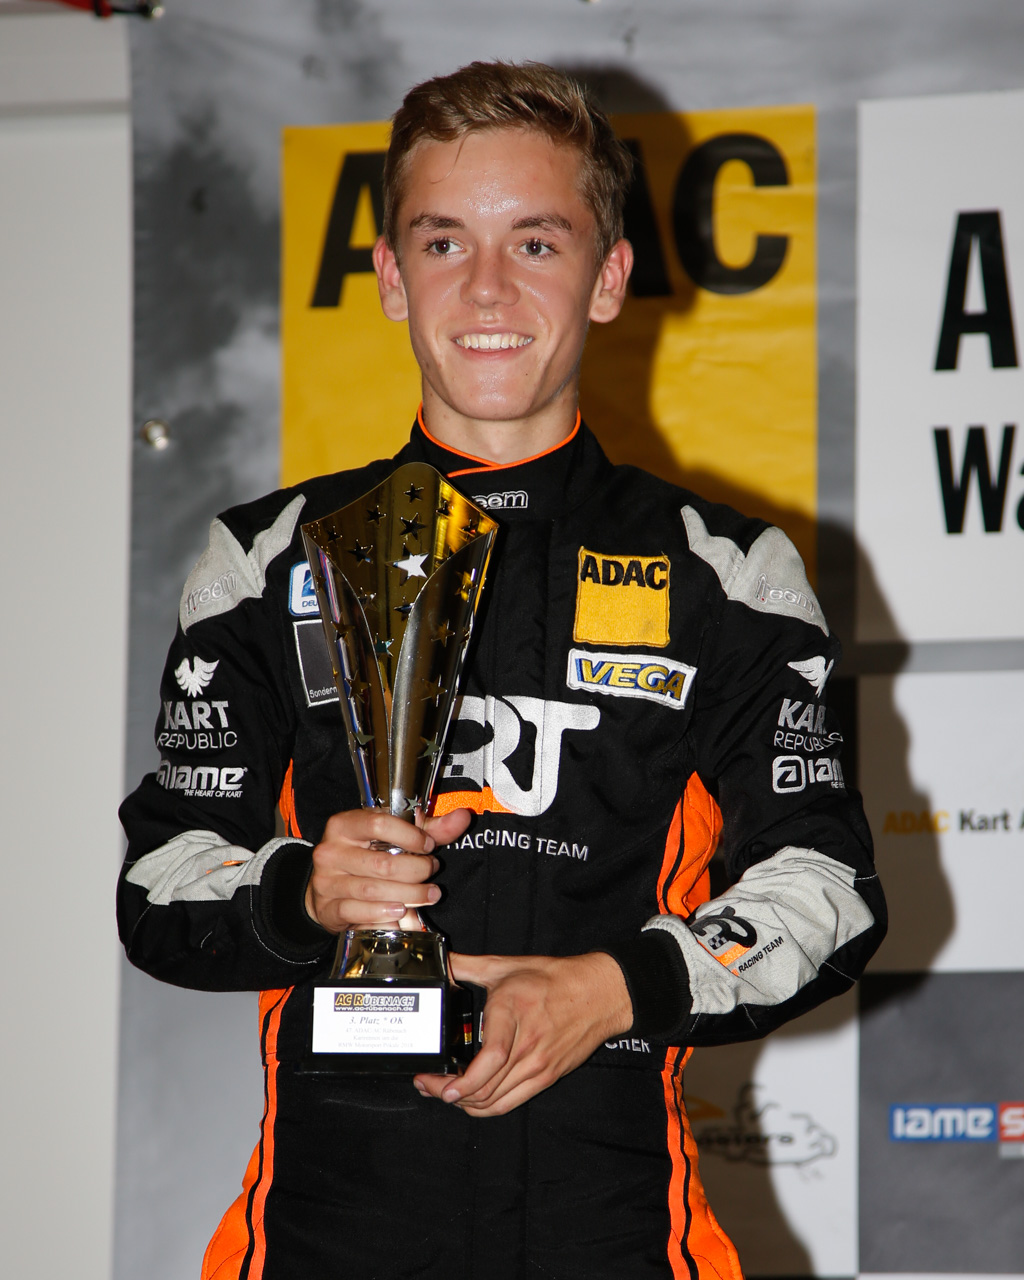 Titelgewinn für Alexander Tauscher im ADAC Kart Masters